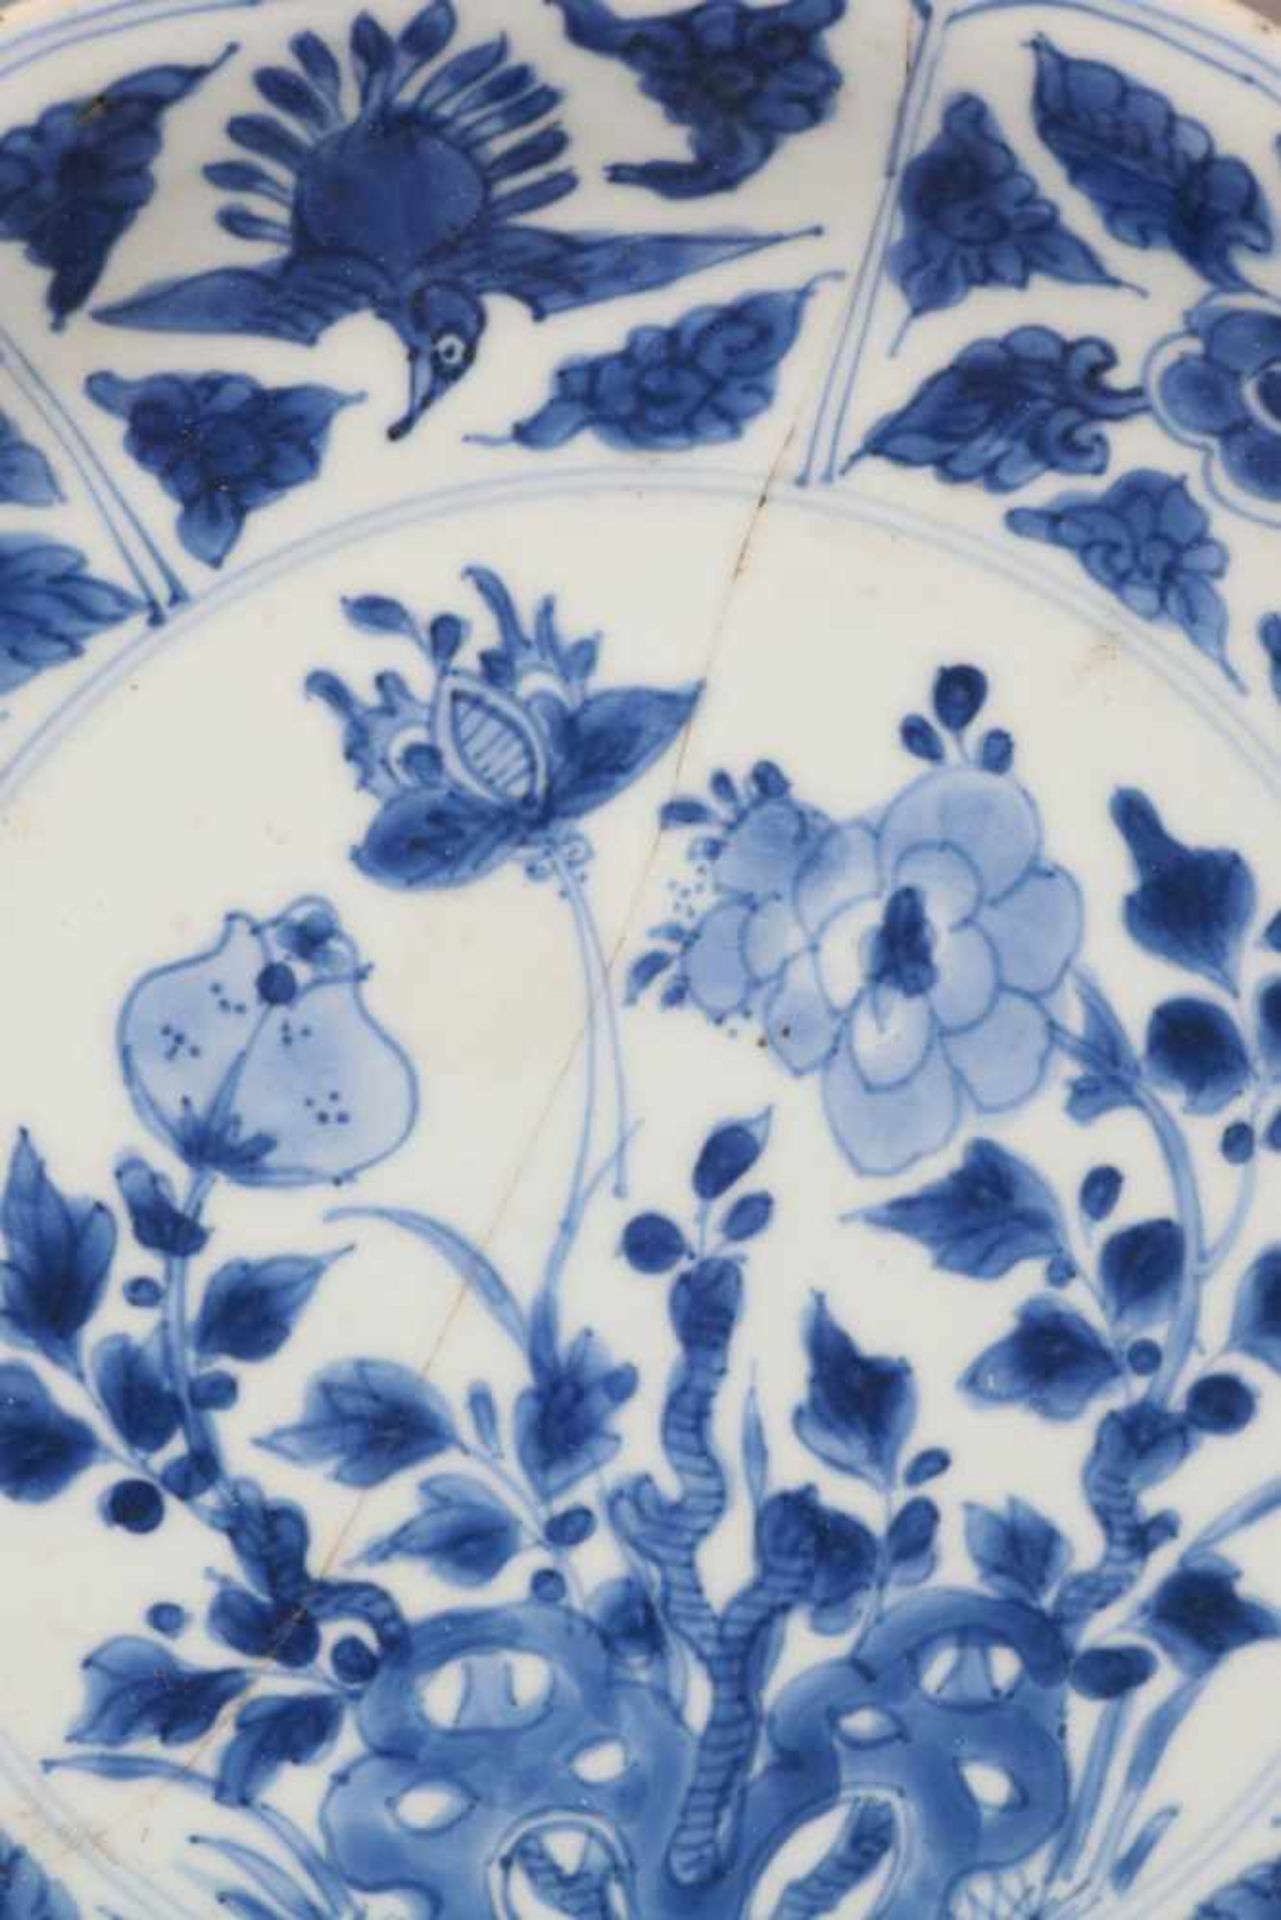 Paar chinesische TellerPorzellan, wohl 18. Jhdt., Blaumalerei, passige, leicht vertiefte Teller - Bild 6 aus 6